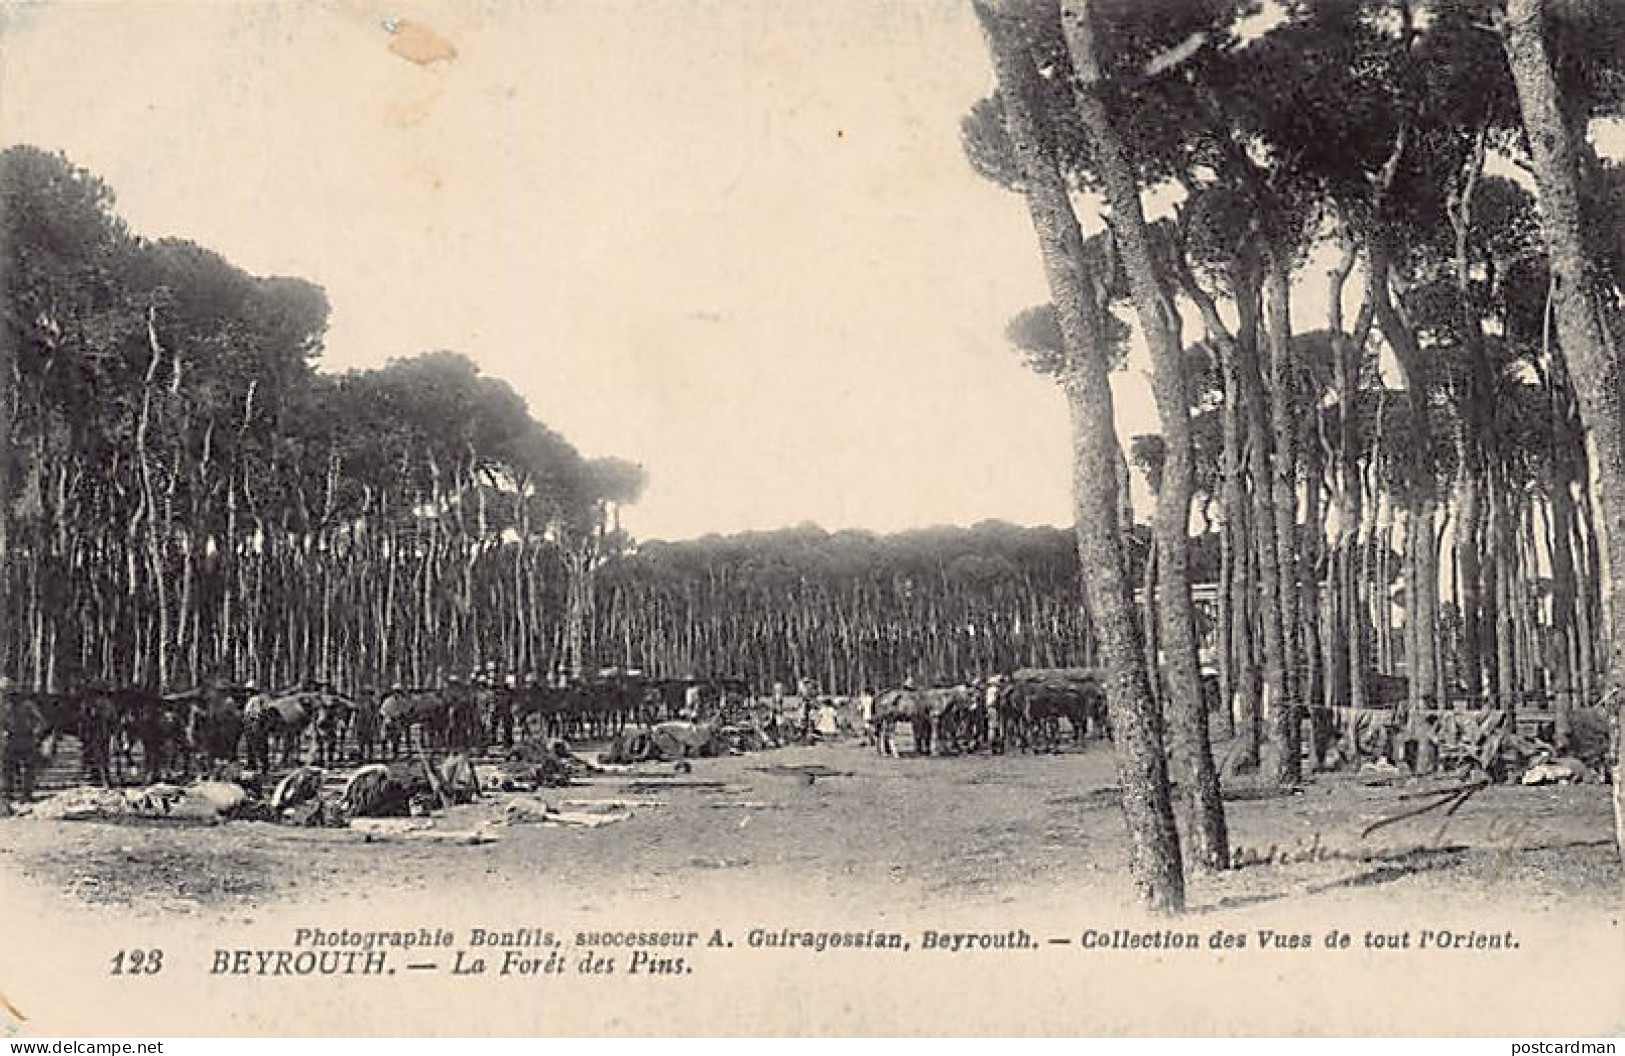 Liban - BEYROUTH - La Forêt De Spins - Camp Militaire - Ed. Photographie Bonfils, Successeur A. Guiragossian 123 - Liban